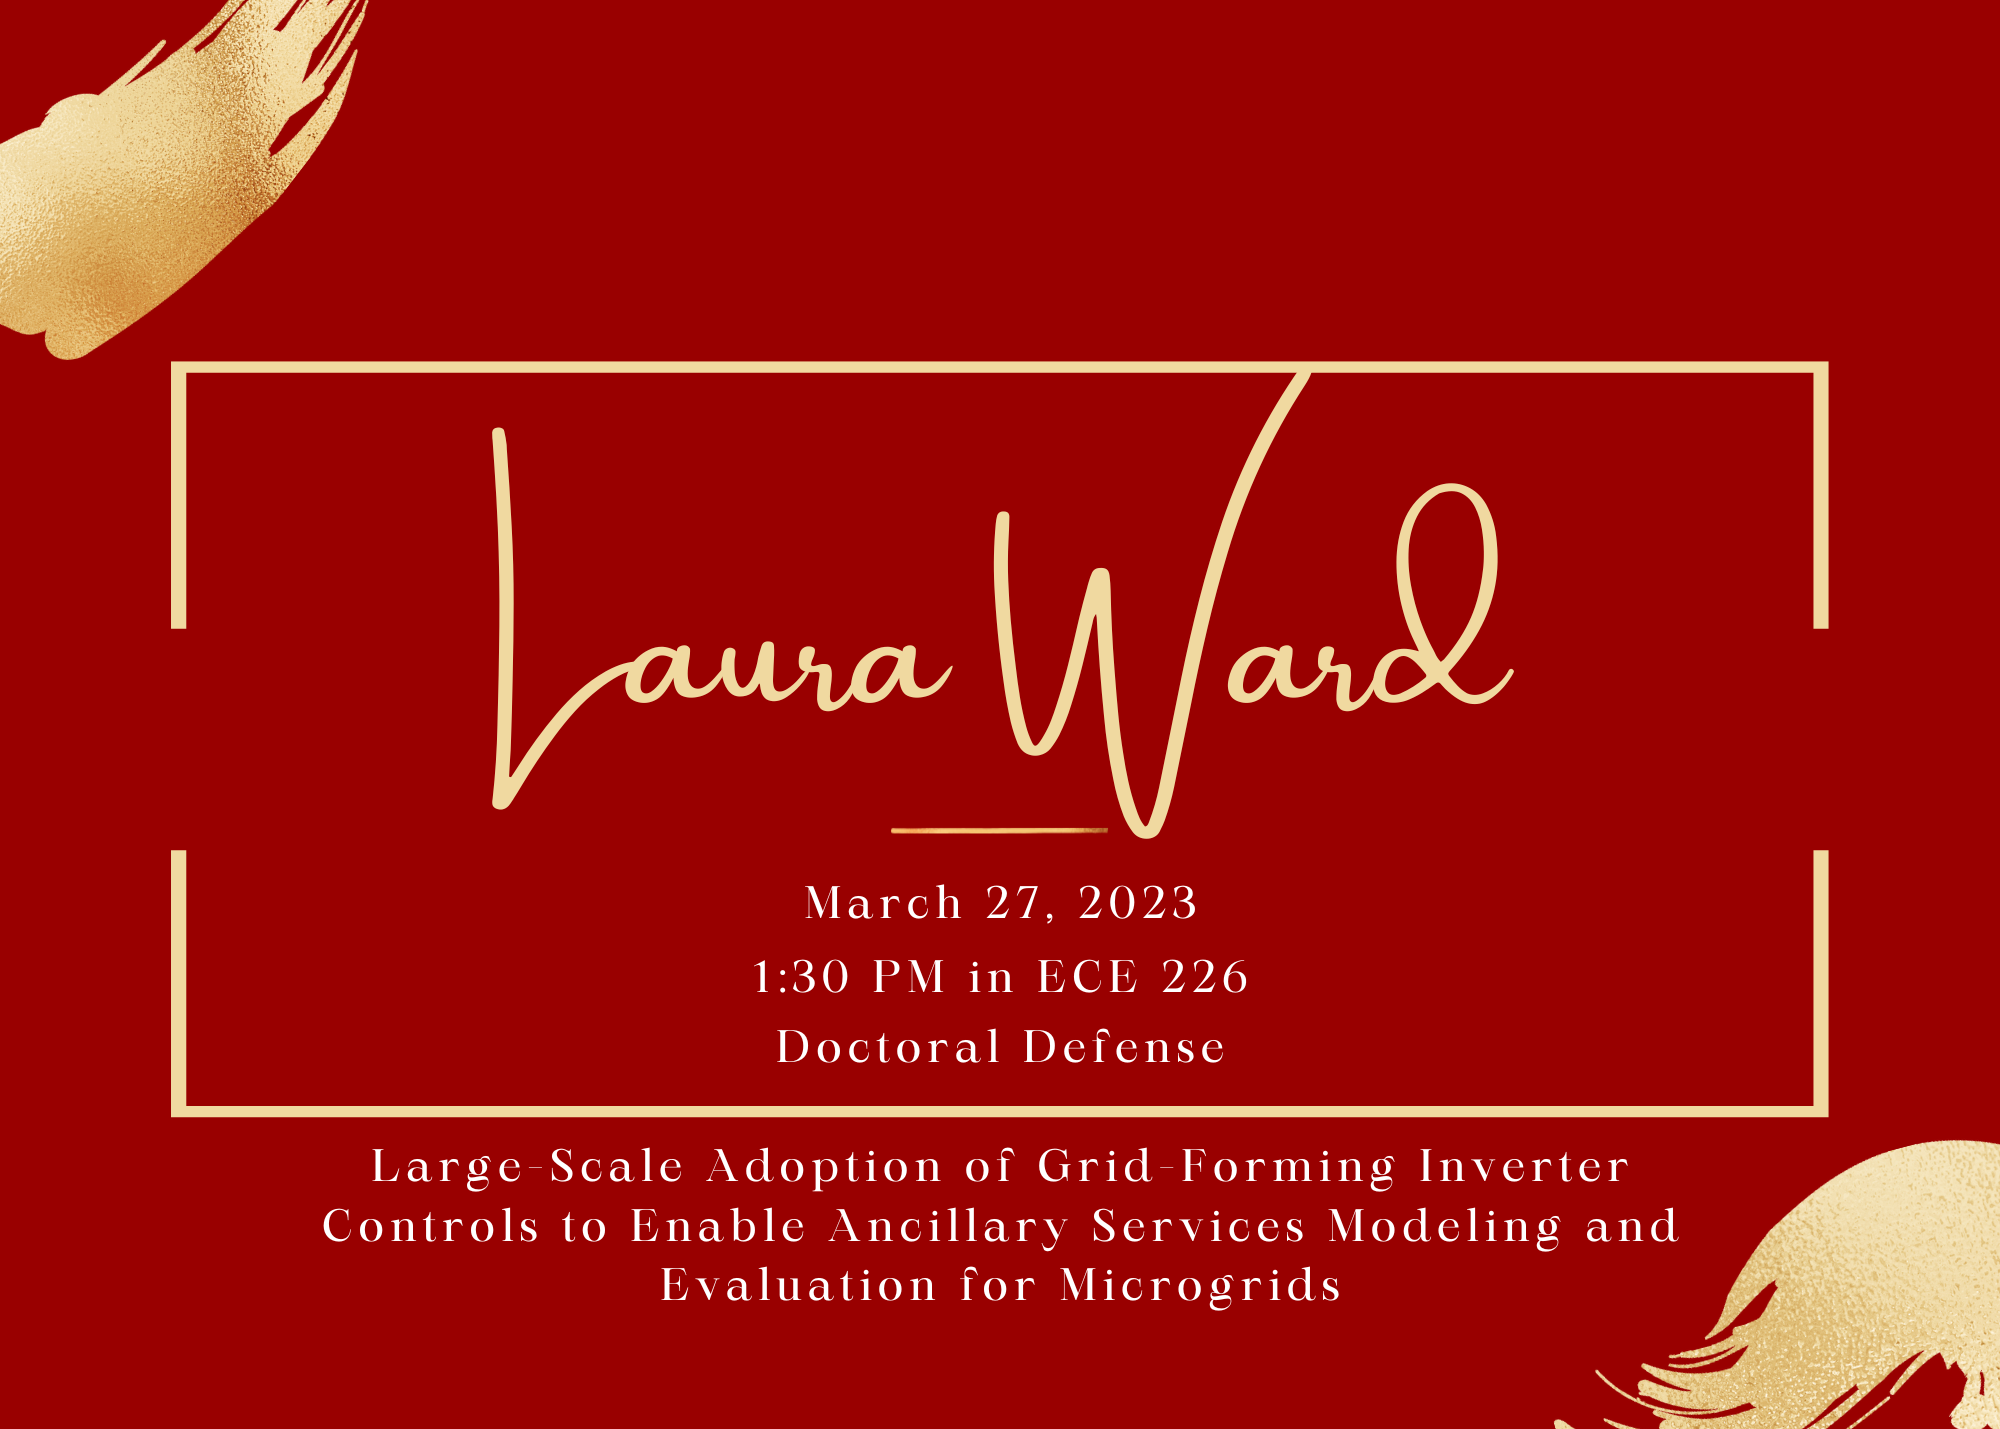 Laura Ward